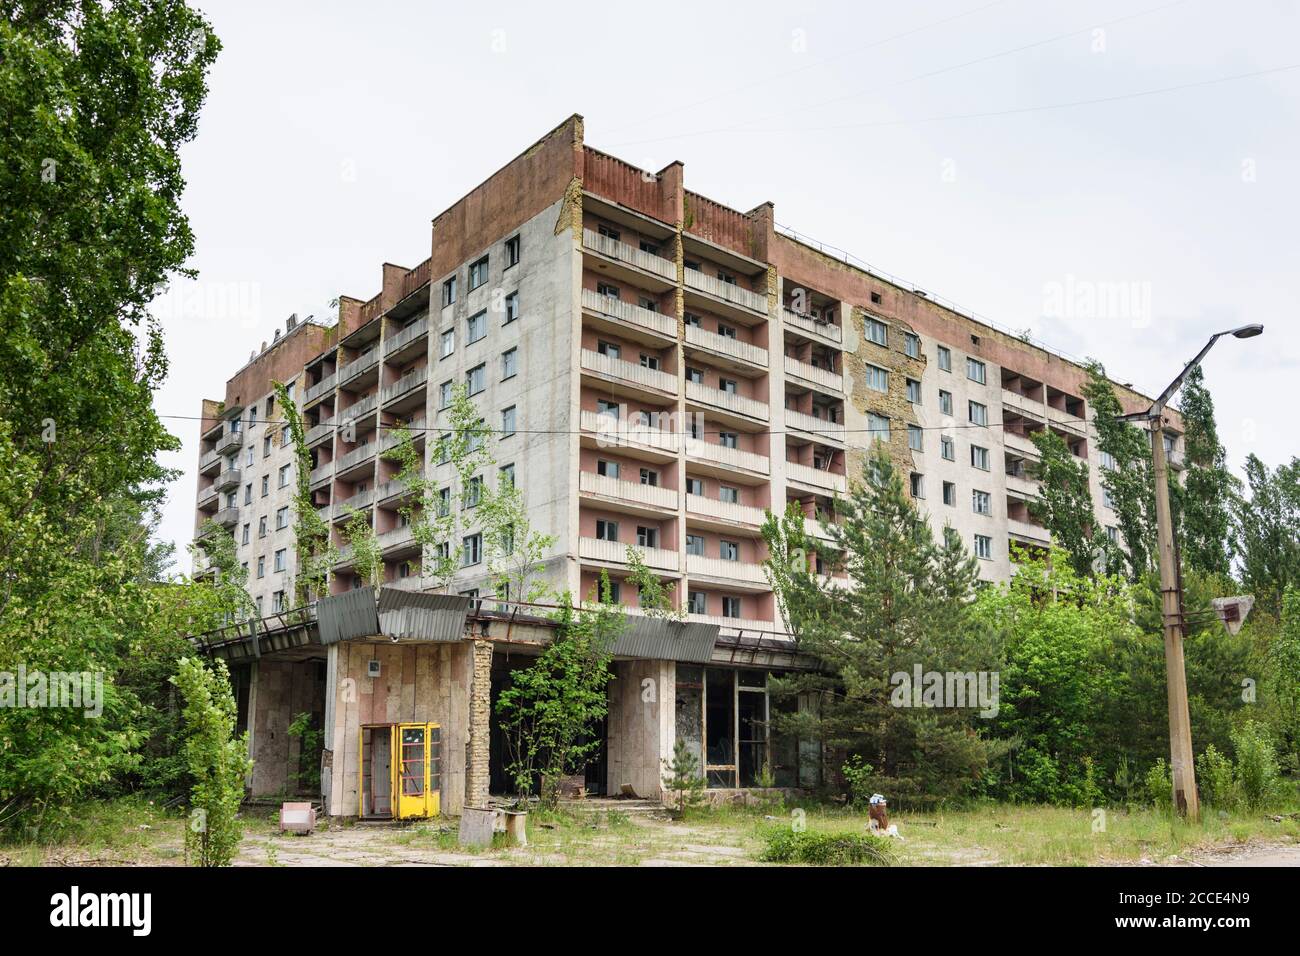 Pripyat (Prypiat), abandoned apartment houses in Chernobyl (Chornobyl) Exclusion Zone, Kiev Oblast, Ukraine Stock Photo